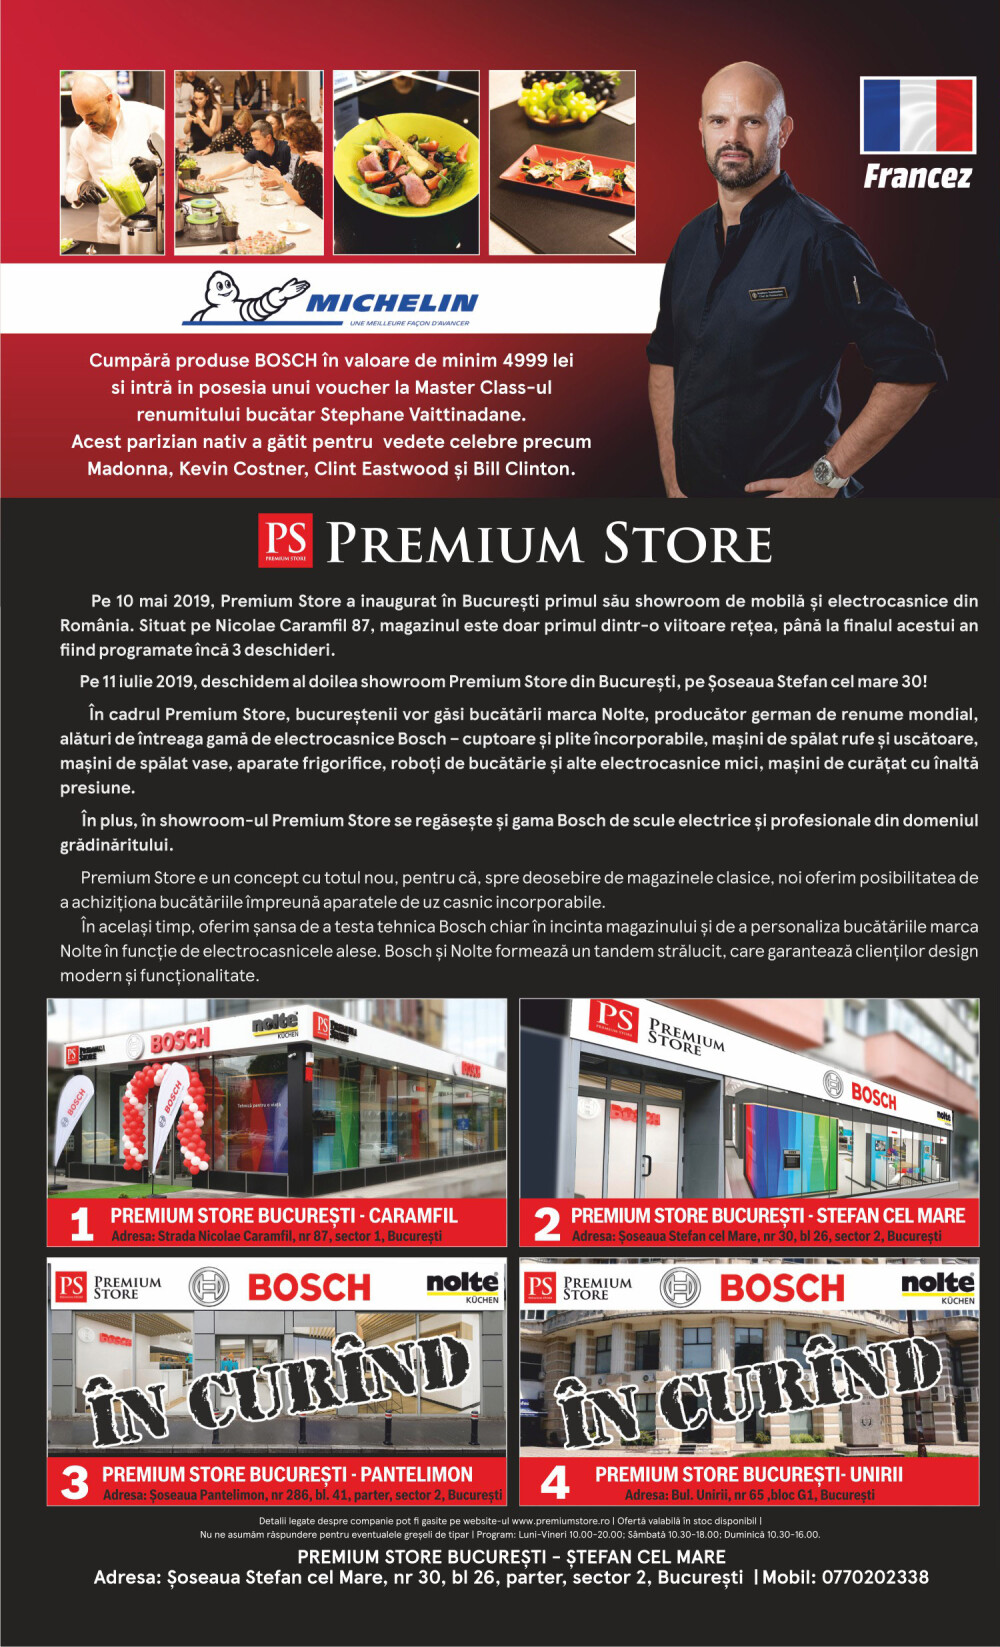 (P) Premium Store se extinde în București și deschide al doilea showroom de mobilă și electrocasnice - Imaginea 8